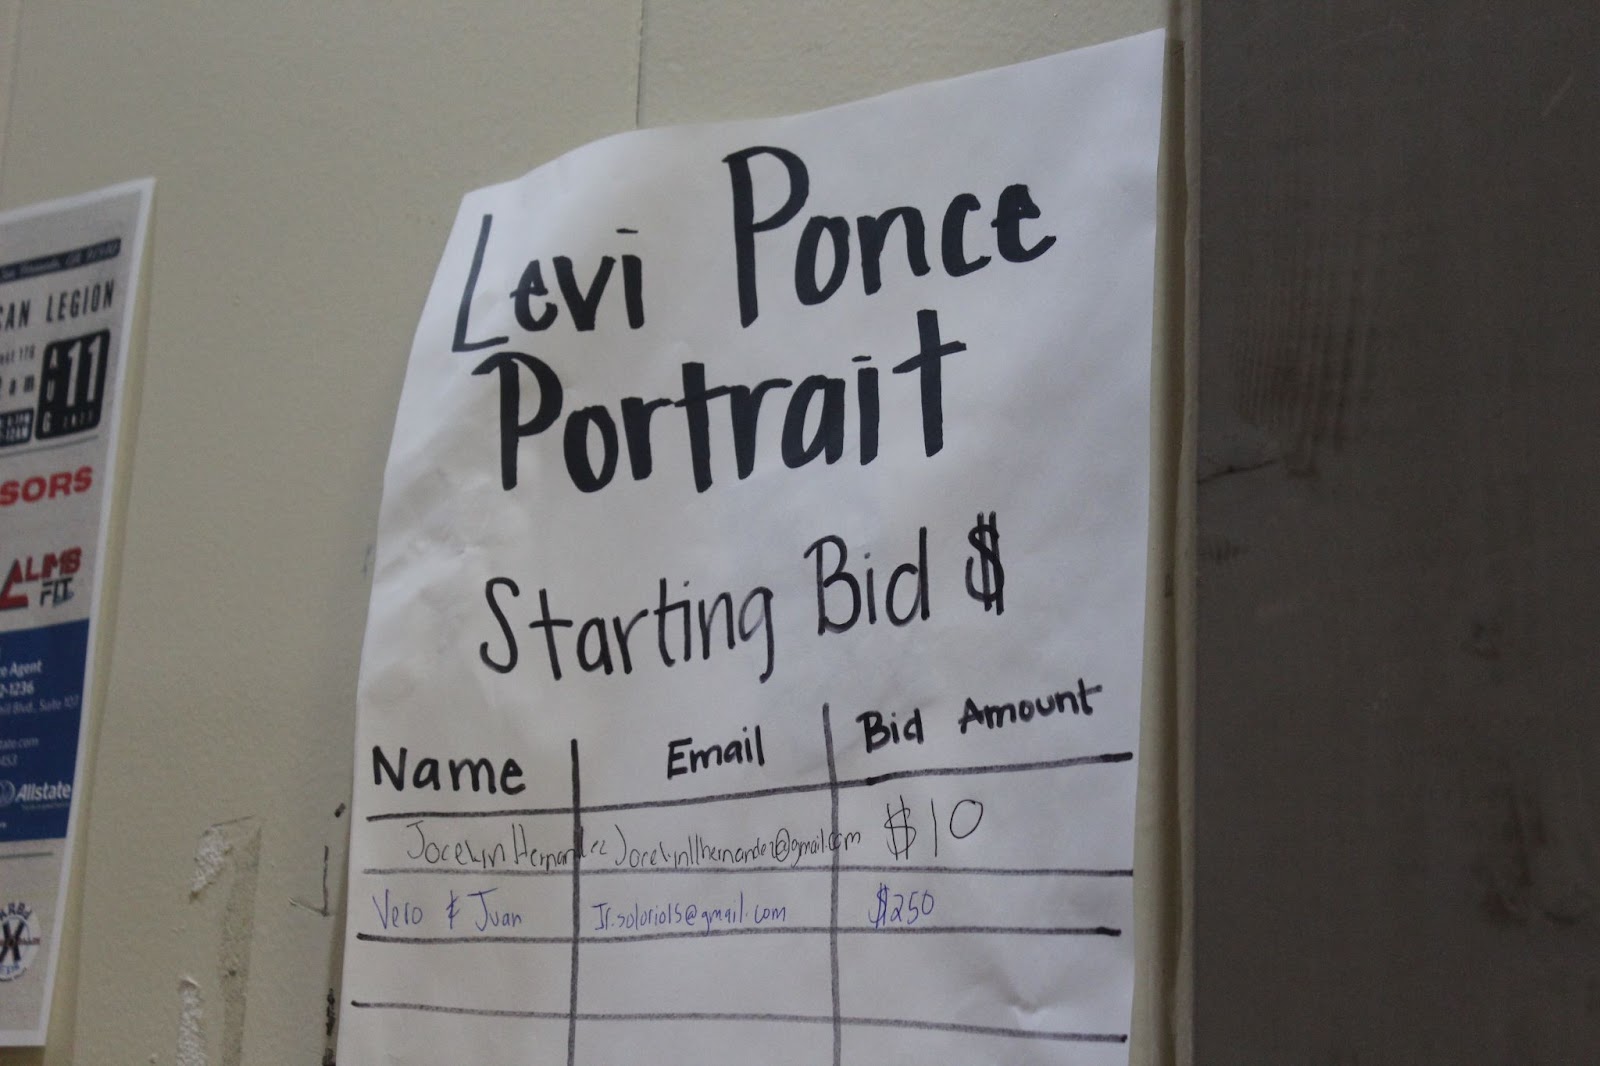 Bidding list for Levi Ponce's portrait at the KROJ benefit concert